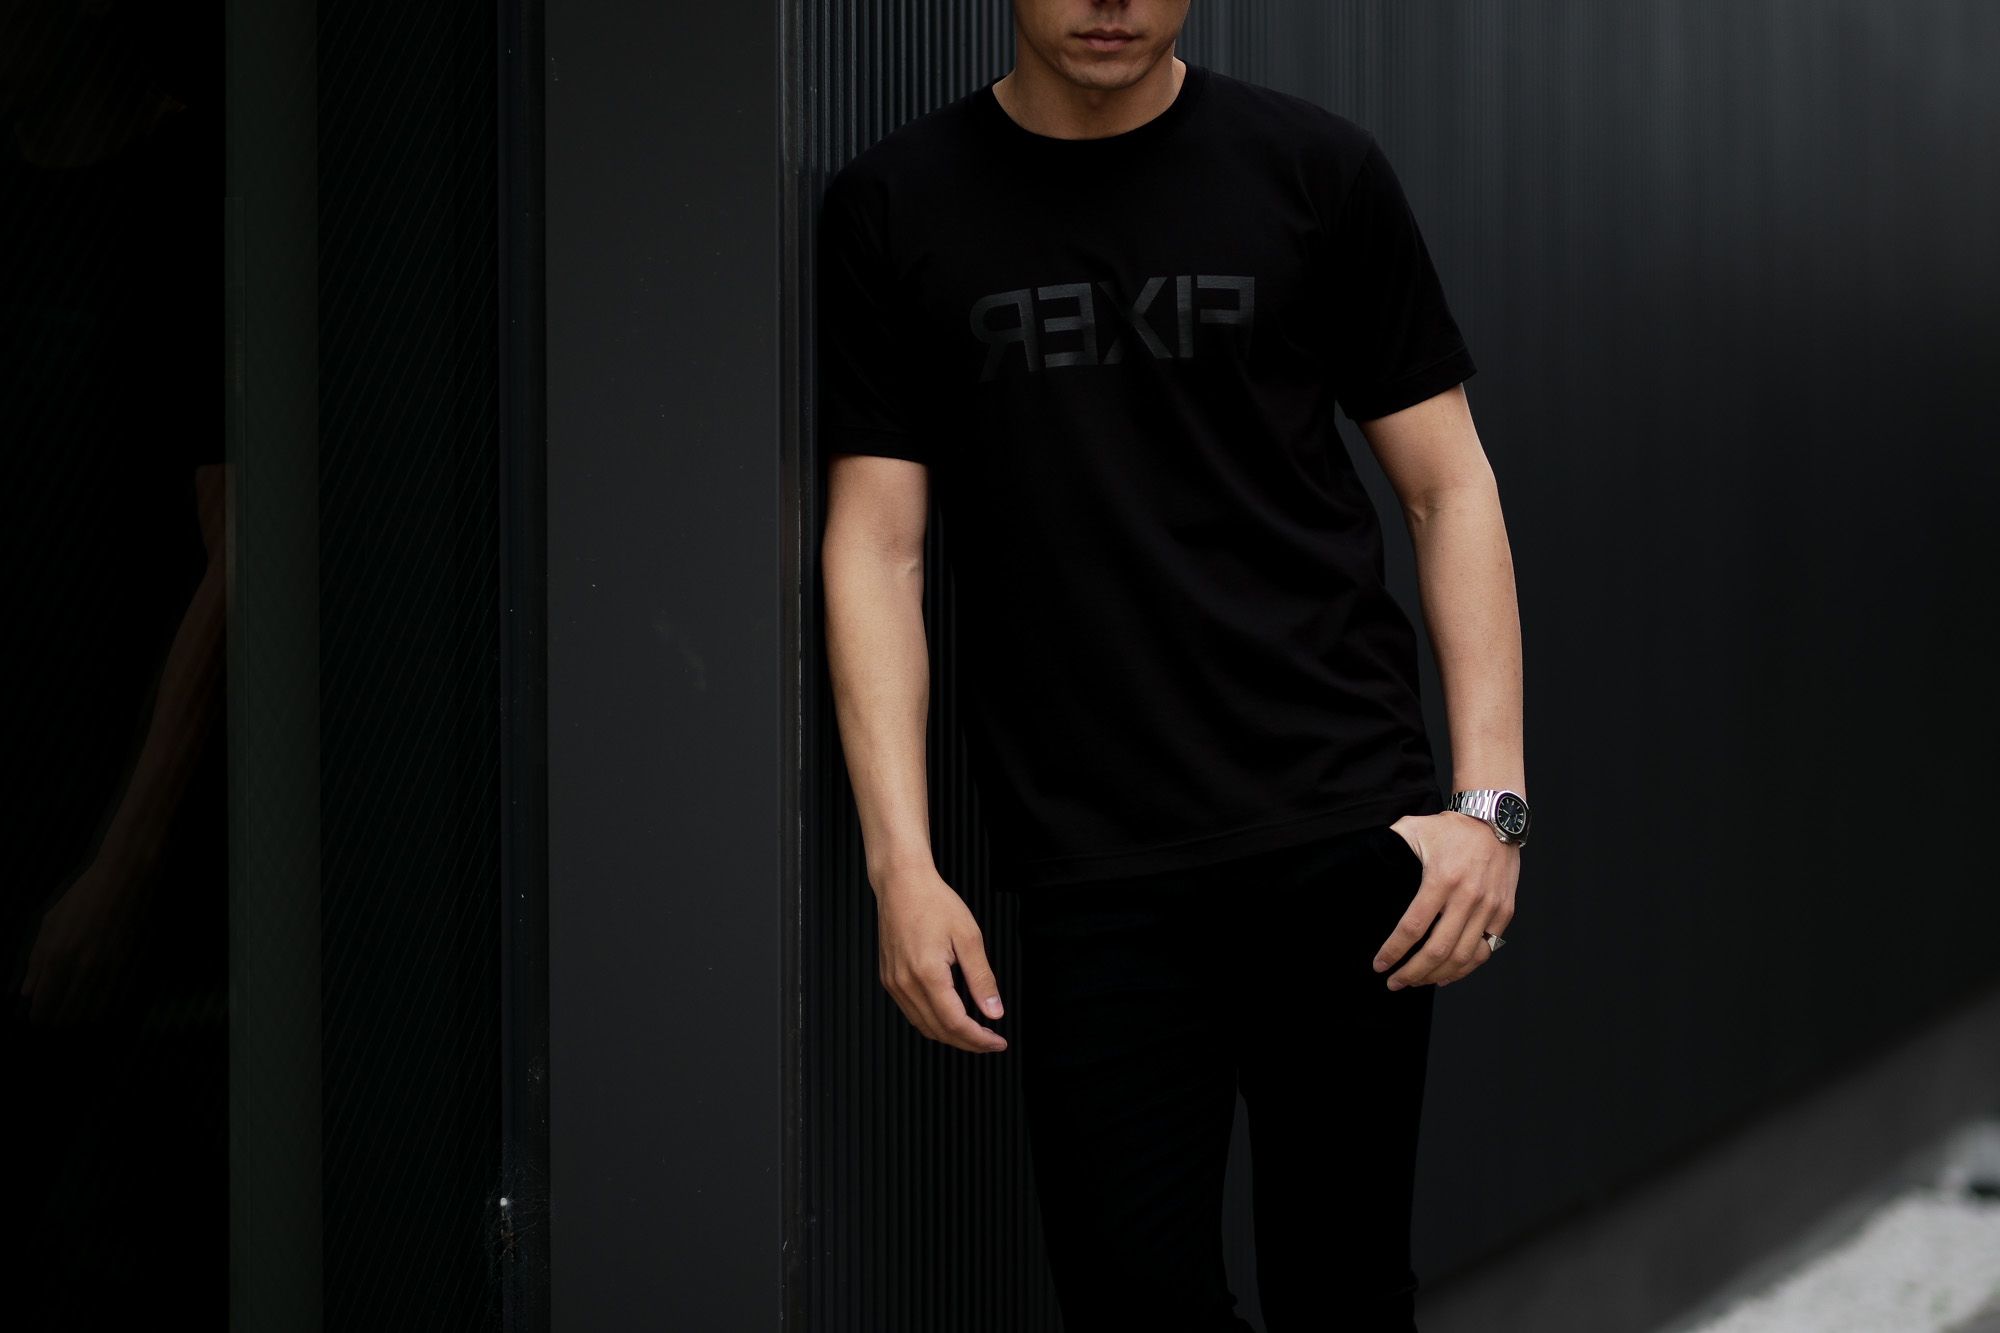 FIXER (フィクサー) FTS-03 Reverse Print Crew Neck T-shirt リバースプリント Tシャツ ALL BLACK (オールブラック) 【ご予約開始】【2021.4.17(Sat)～2021.5.03(Mon)】 愛知 名古屋 Alto e Diritto altoediritto アルトエデリット